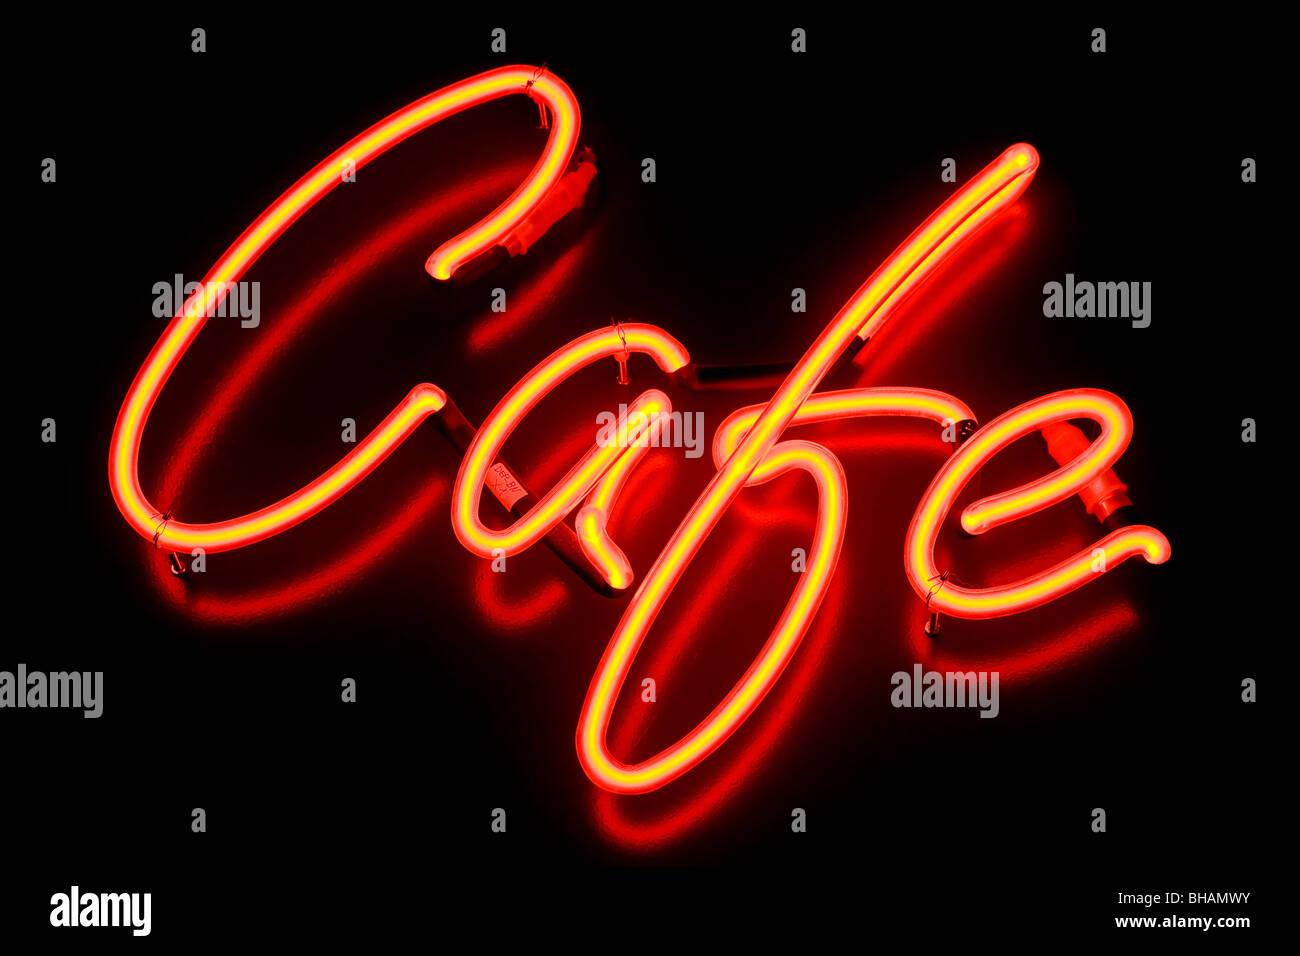 A red café neon sign Stock Photo